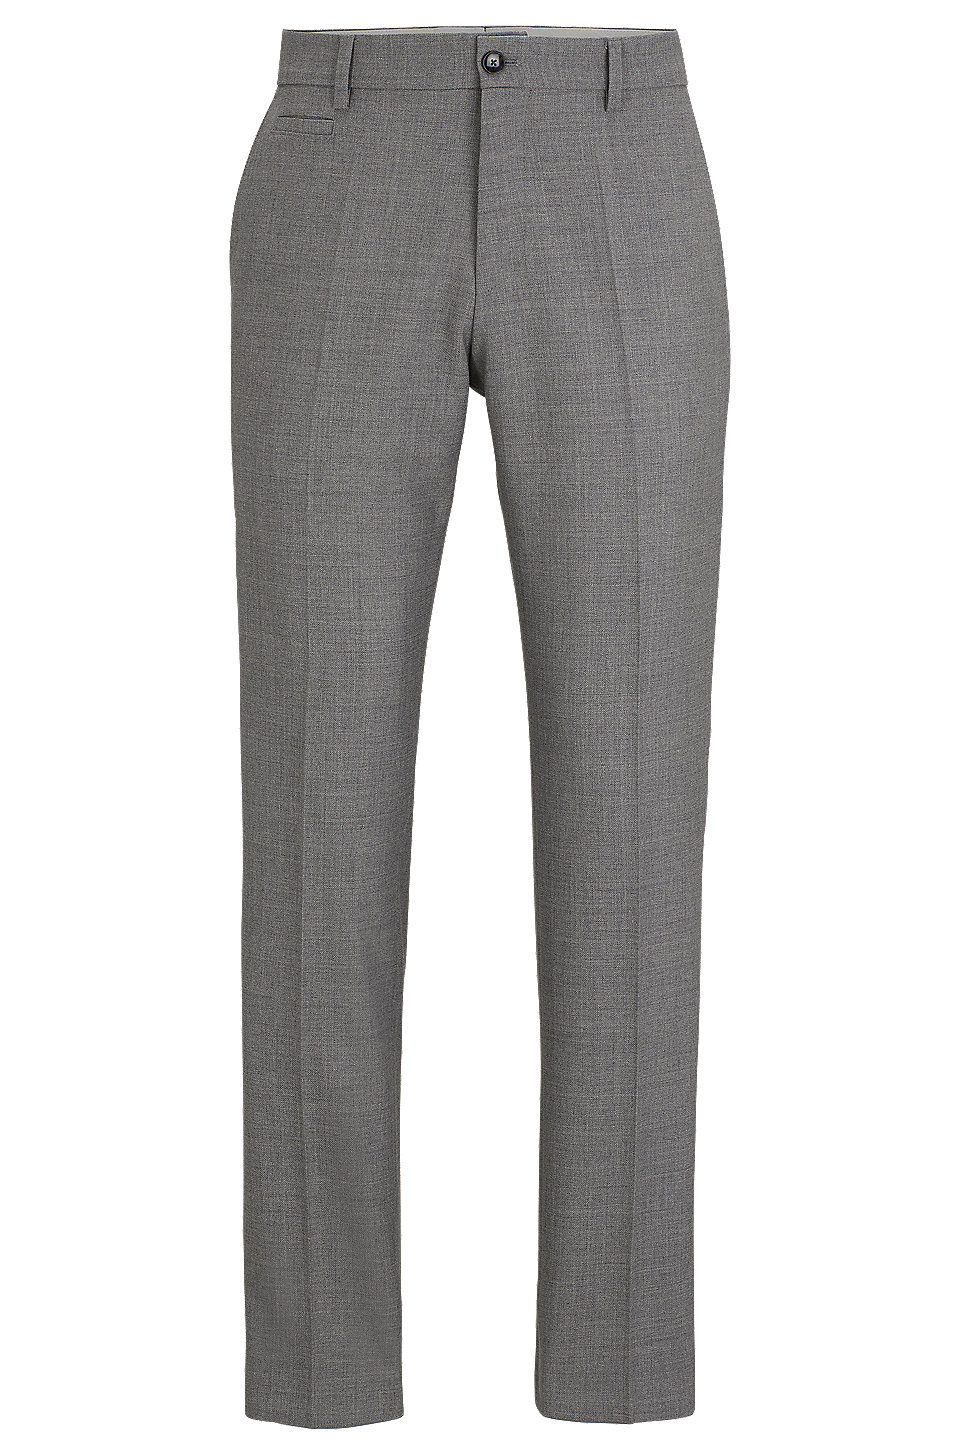 BOSS - Slim-fit pants in micro-patterned virgin wool